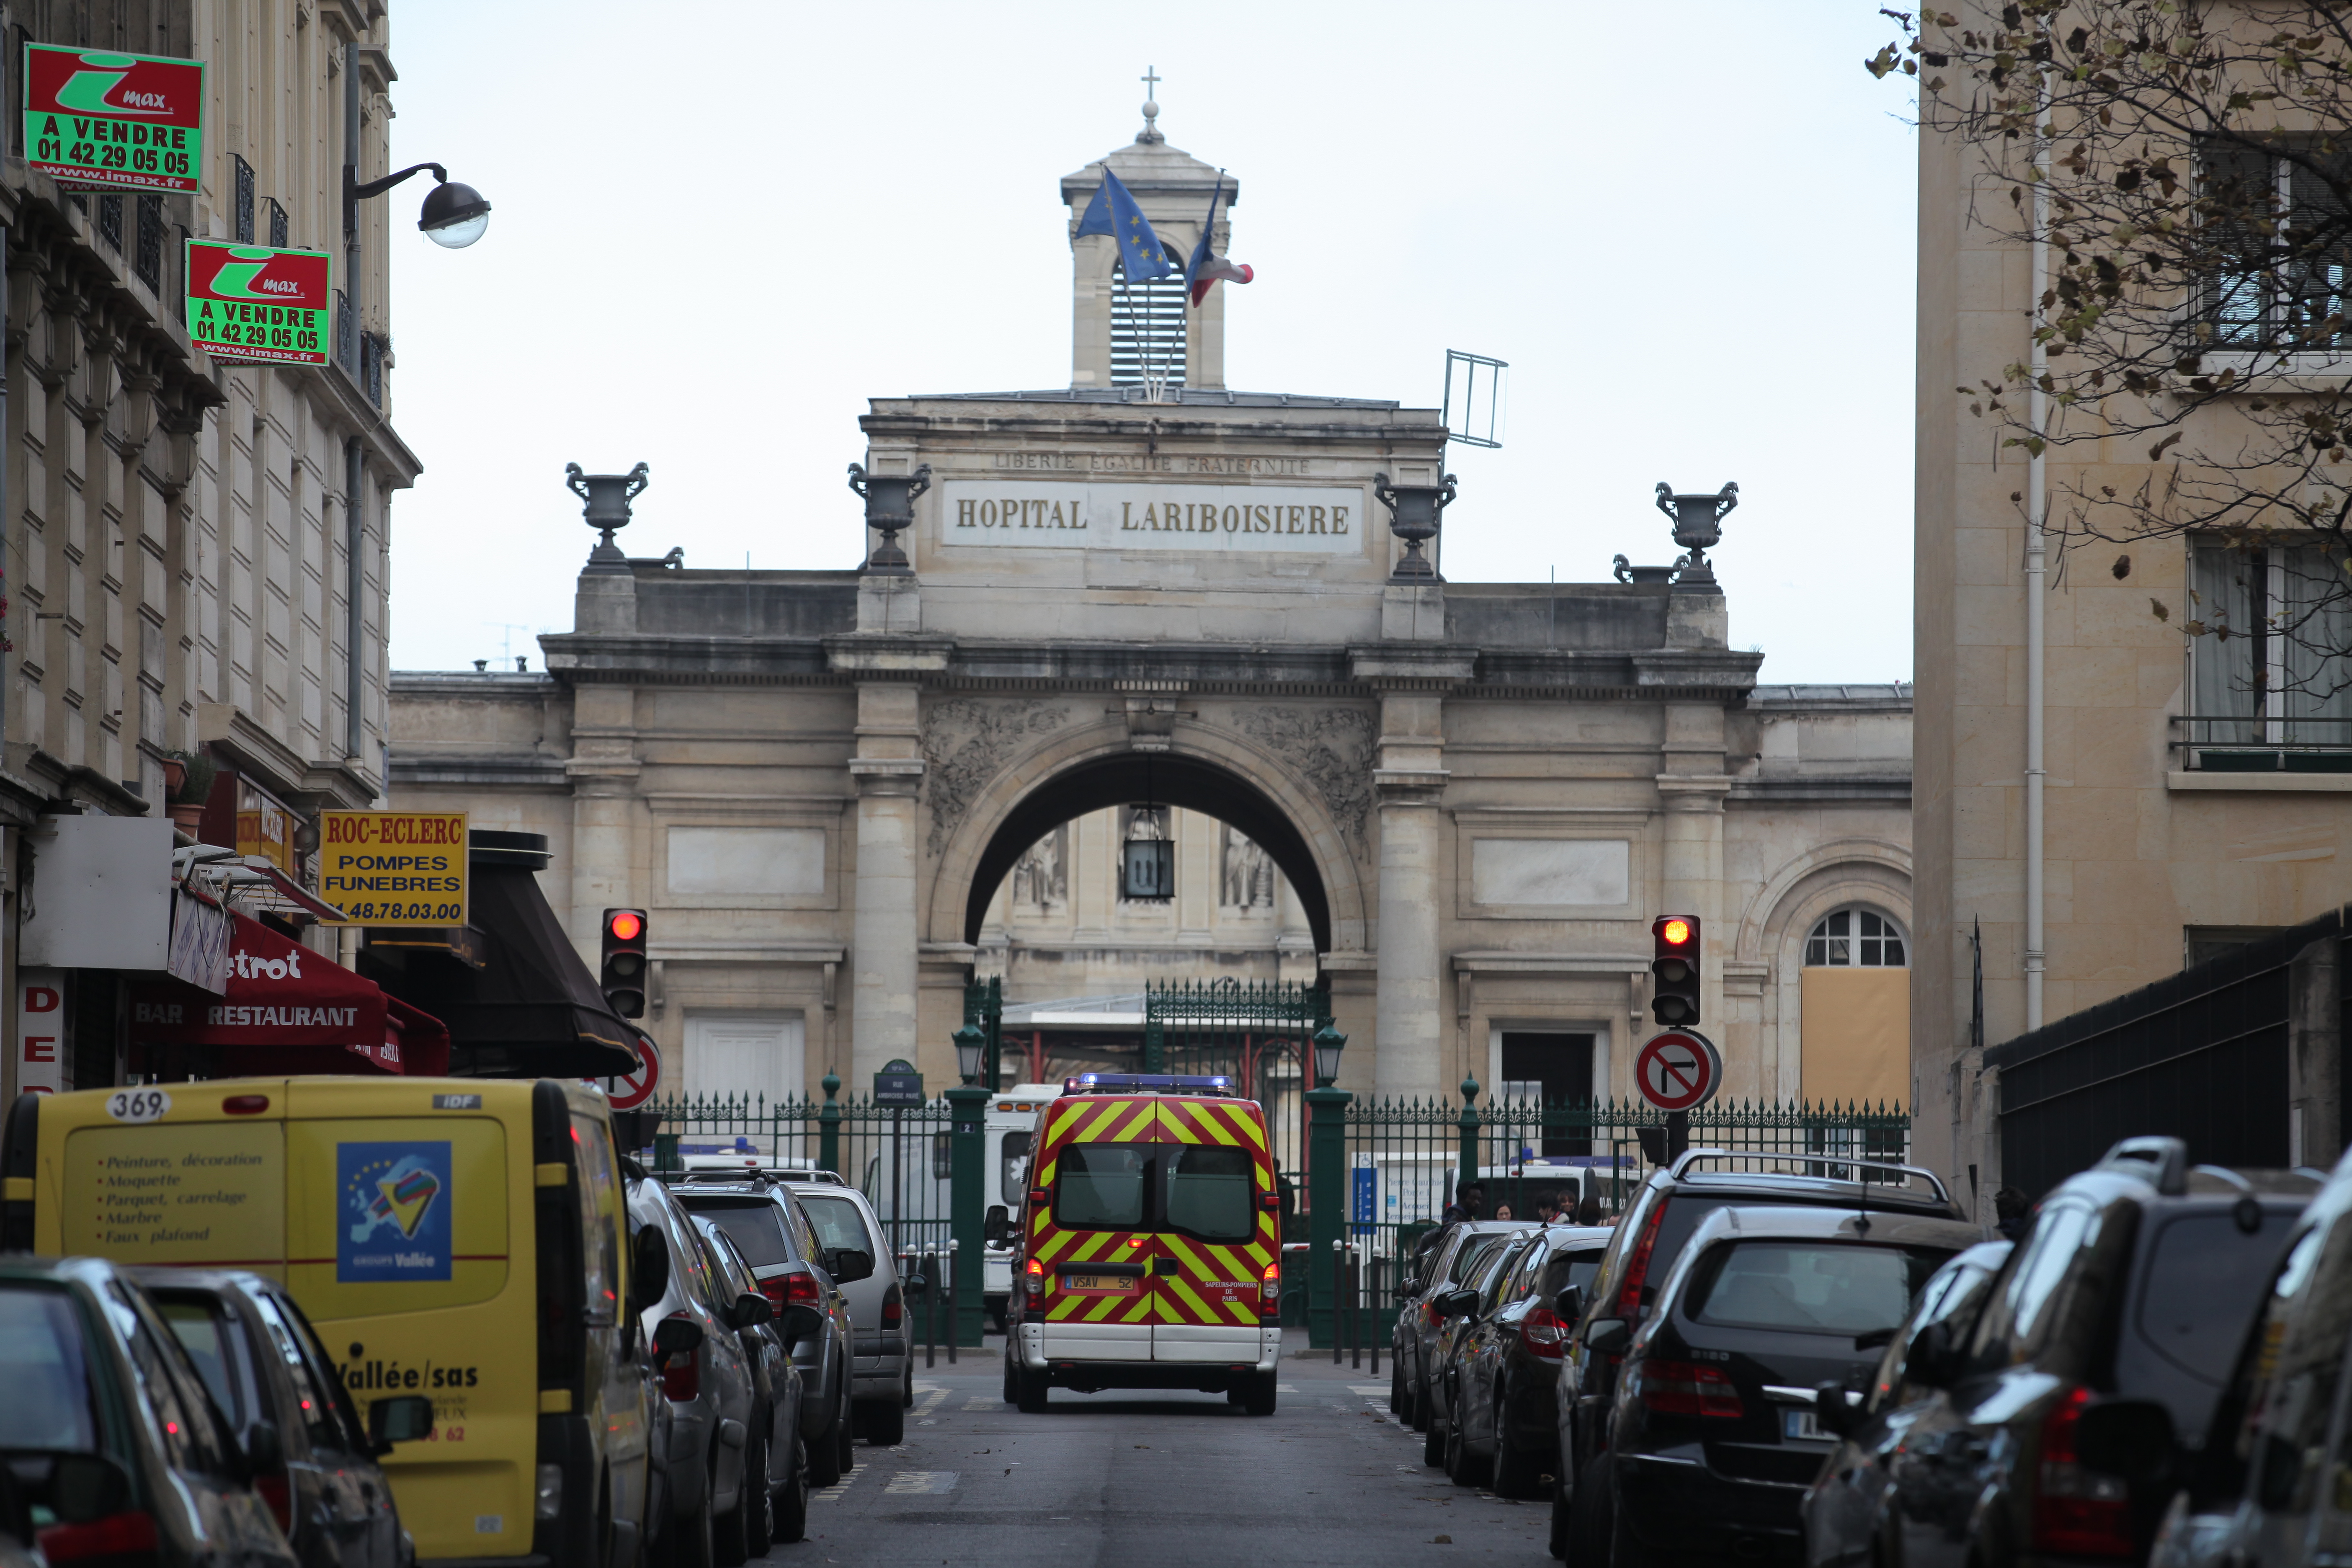 Paris (Xe). Des patrouilles avaient été postées devant les différents accès de l’hôpital Lariboisière à la suite d'un appel téléphonique menaçant. (Illustration) LP/Olivier Corsan